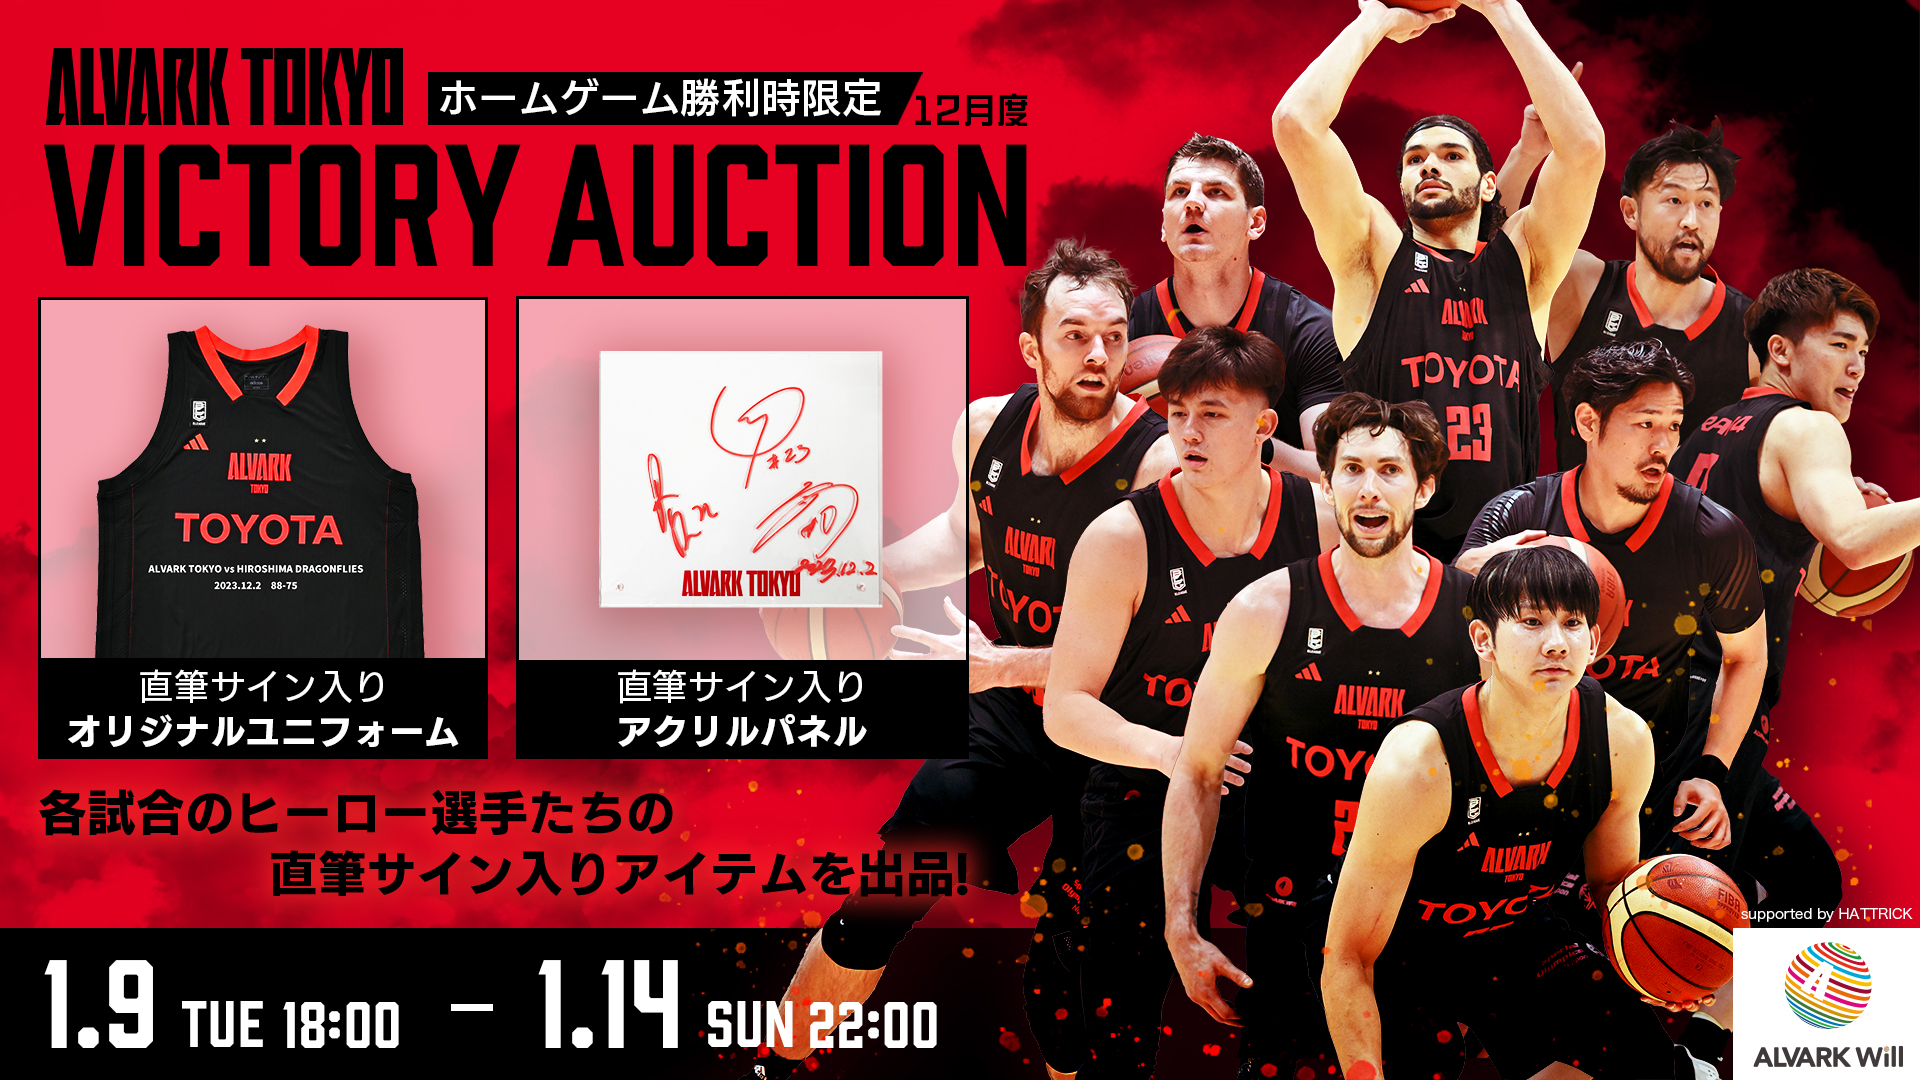 12月ヒーロー選手オークション「ALVARK TOKYO VICTORY AUCTION」の 